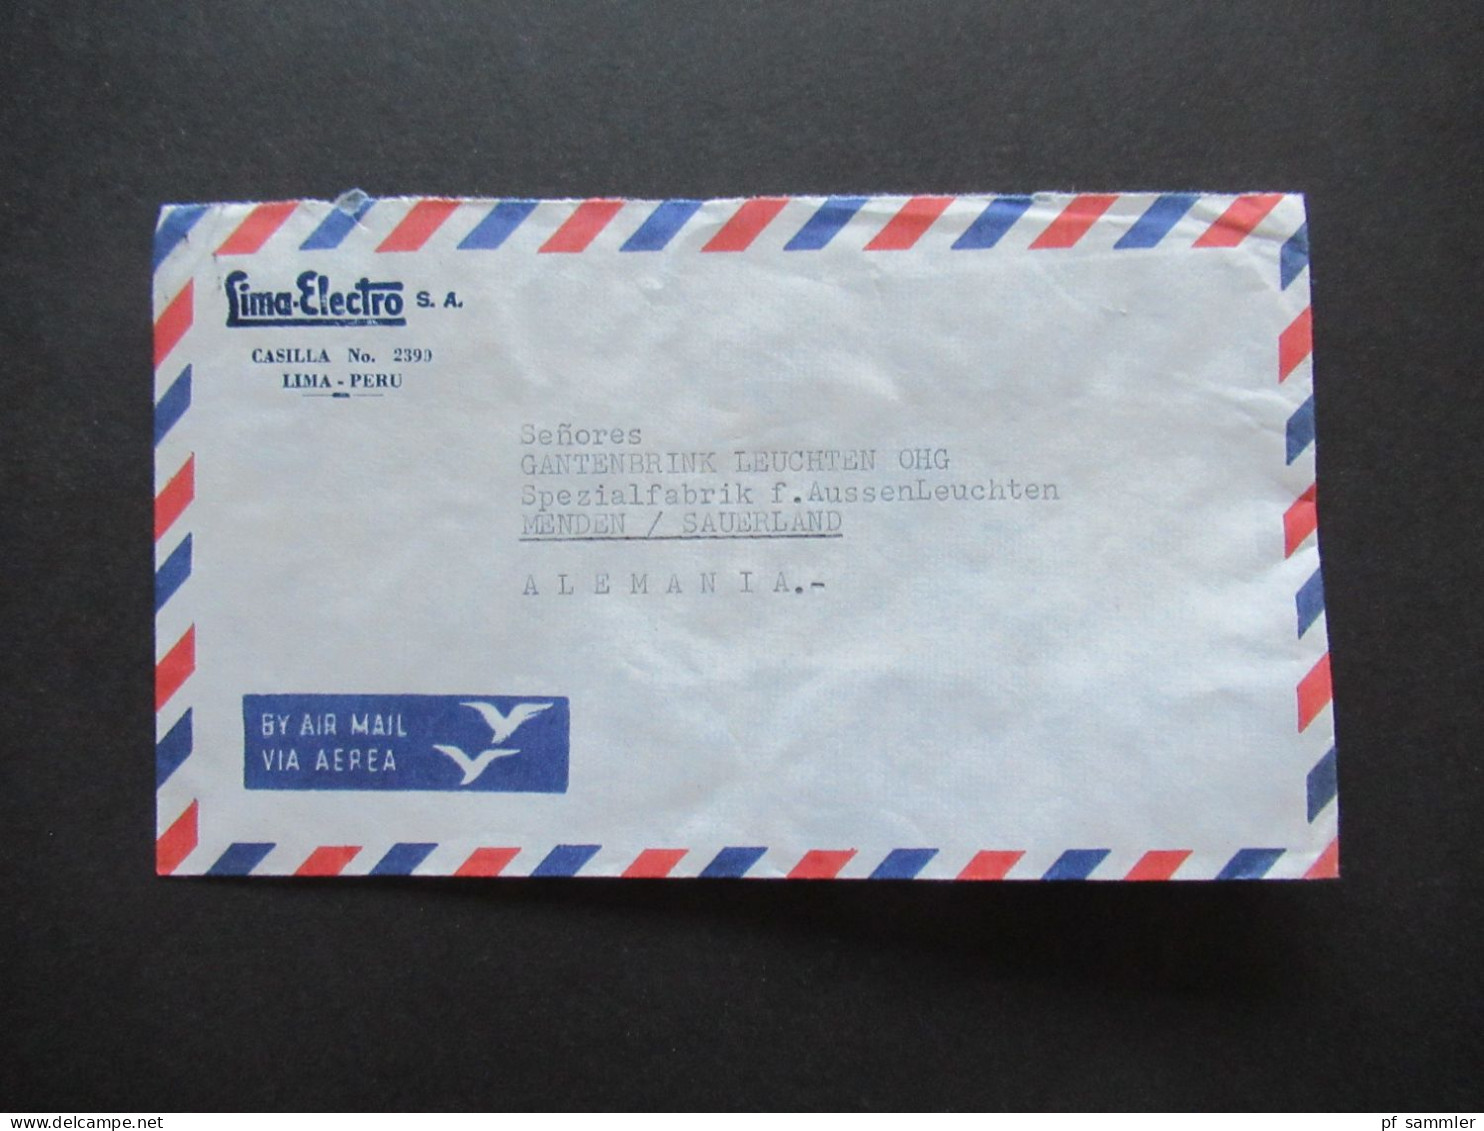 Südamerika Peru By Air Mail Luftpost 1963 Firmenumschlag Lima Electro S.A. Lima Peru 6x Auslandsbrief Nach Menden - Pérou